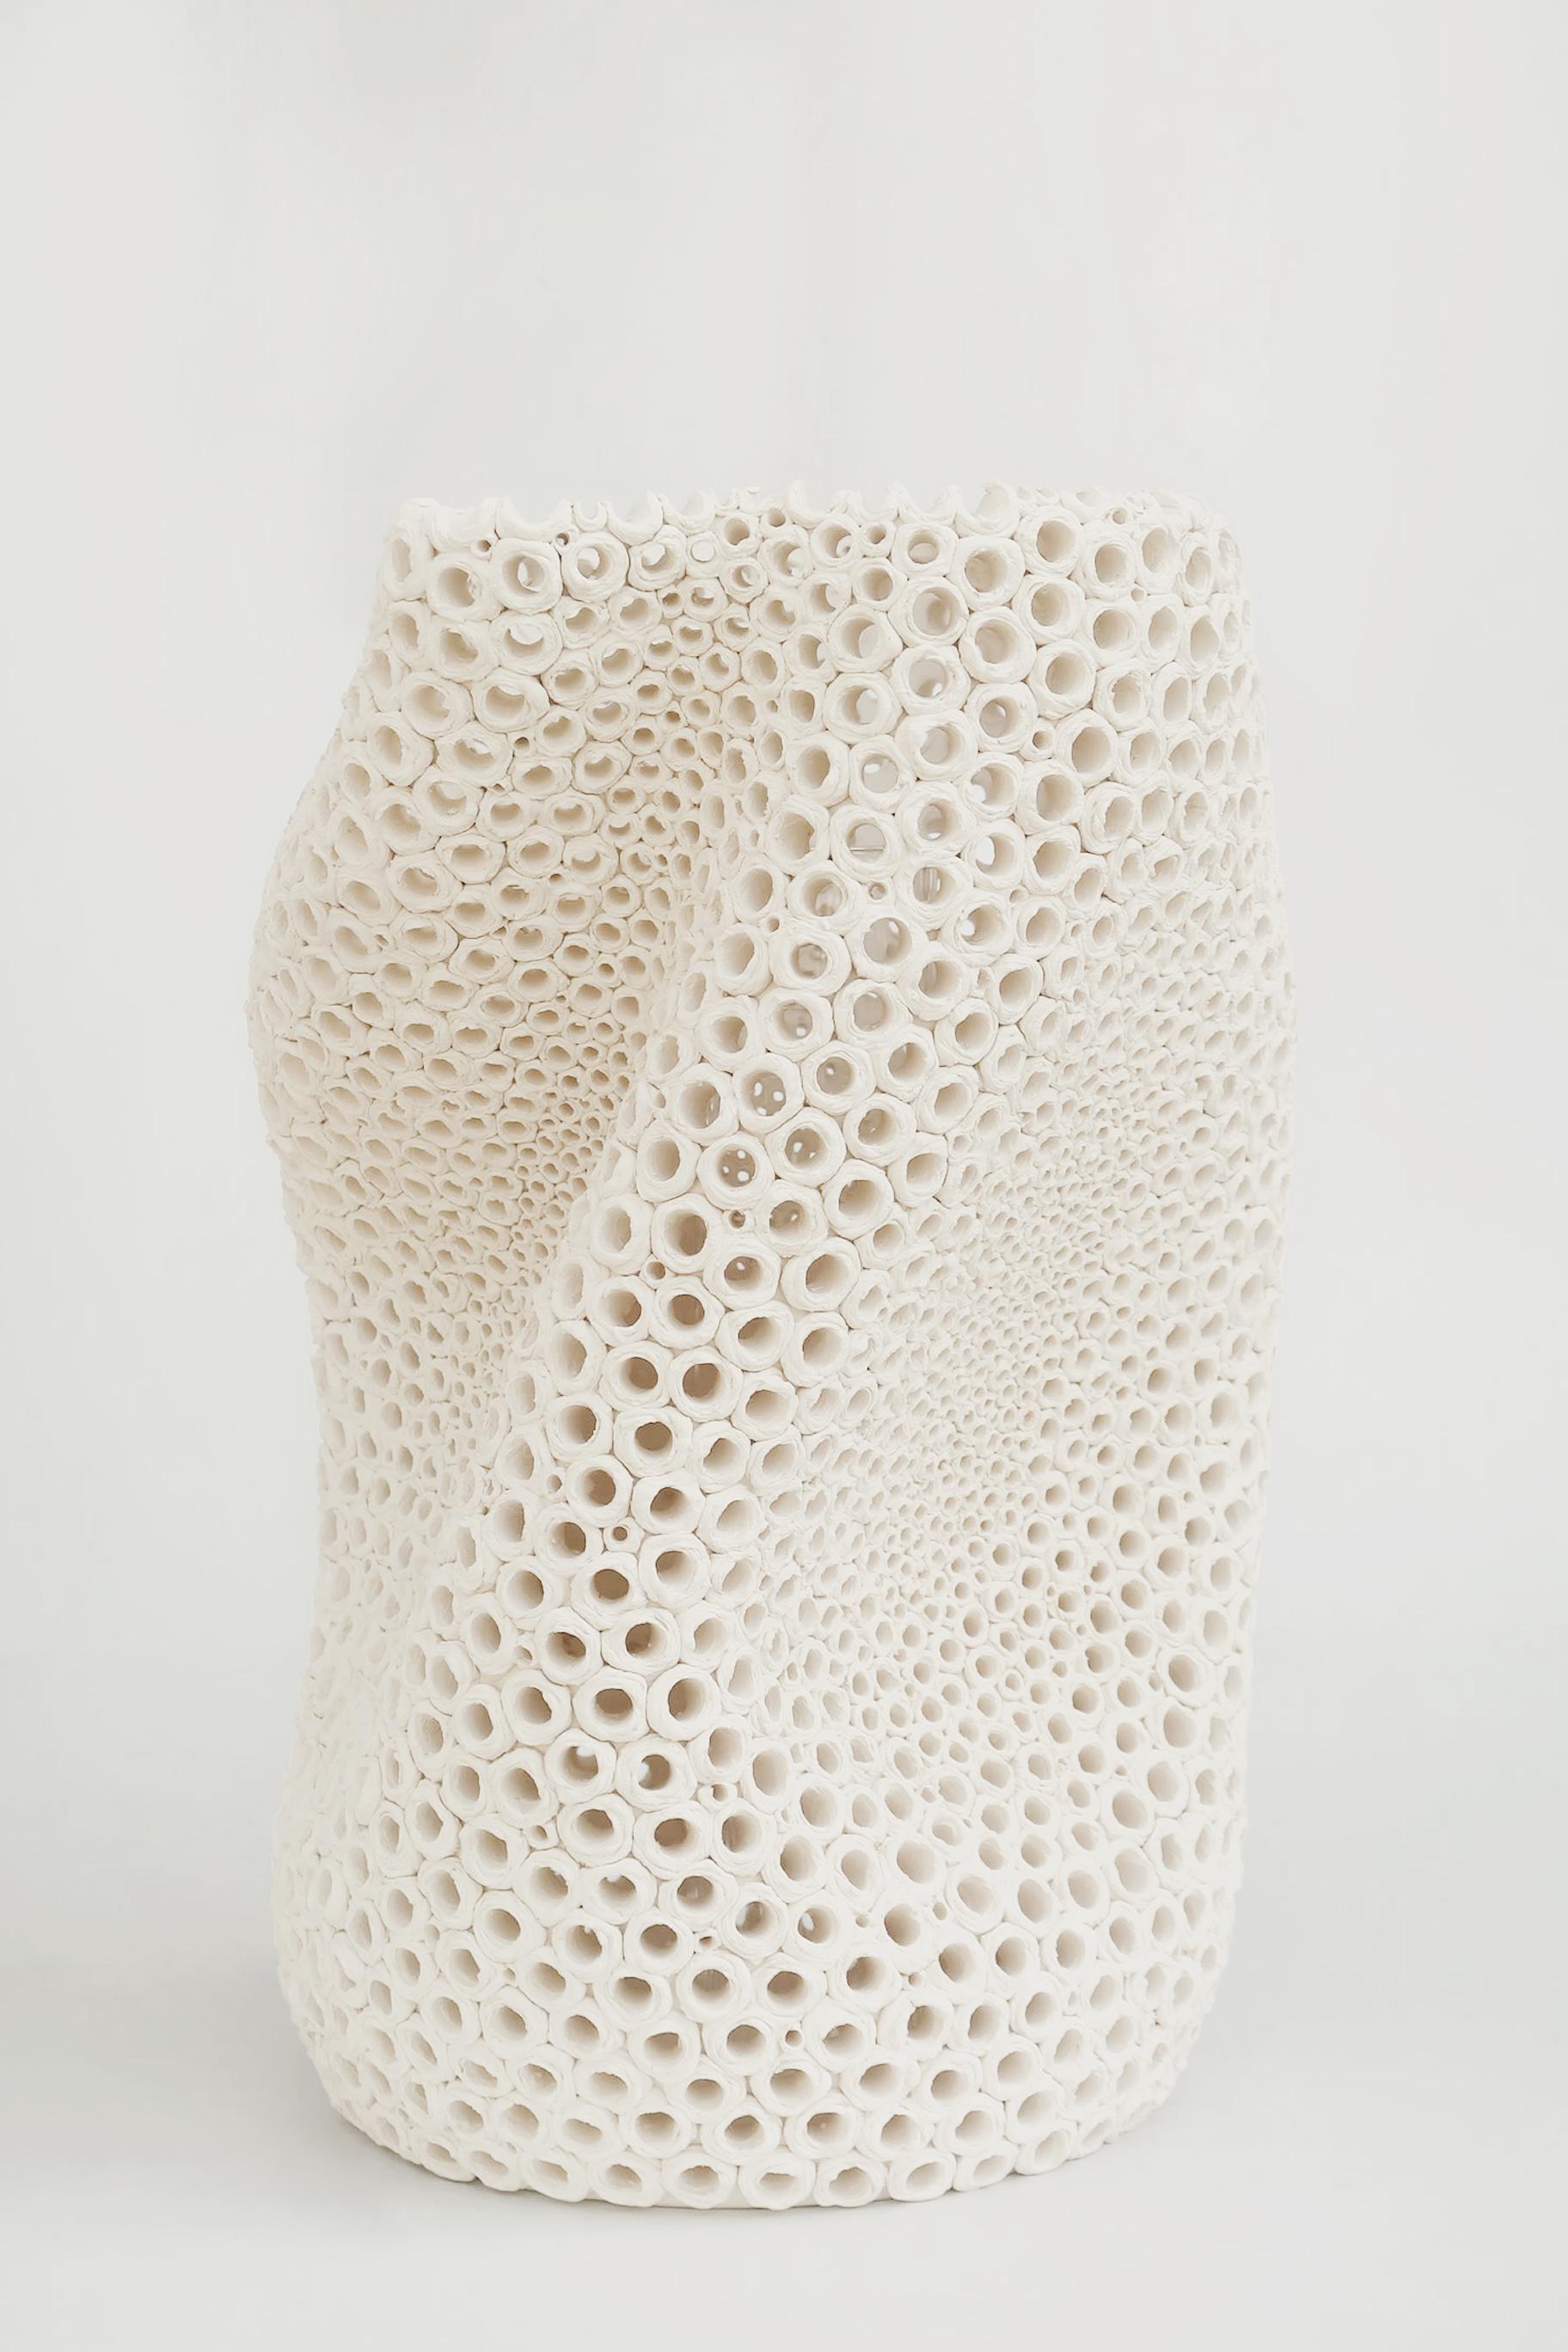 Undulating Hand-Pierced Earthenware Vase aus Steingut in limitierter Auflage von Gilles Caffier (Moderne) im Angebot